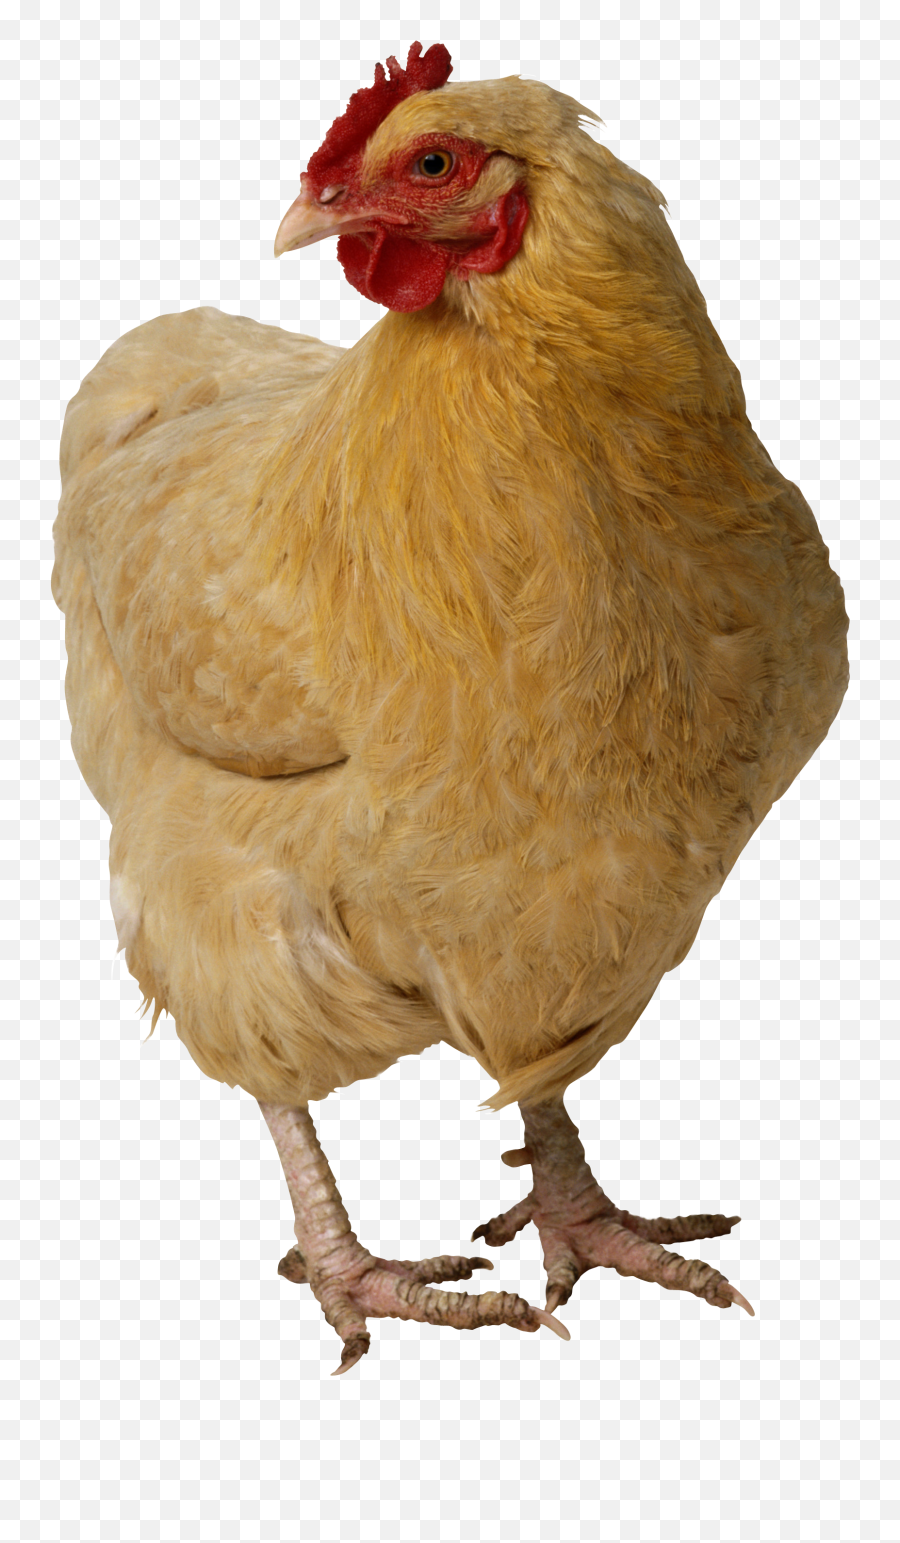 Png Chicken U0026 Free Chickenpng Transparent Images 10078 - Pngio Emoji,Hen Emoji